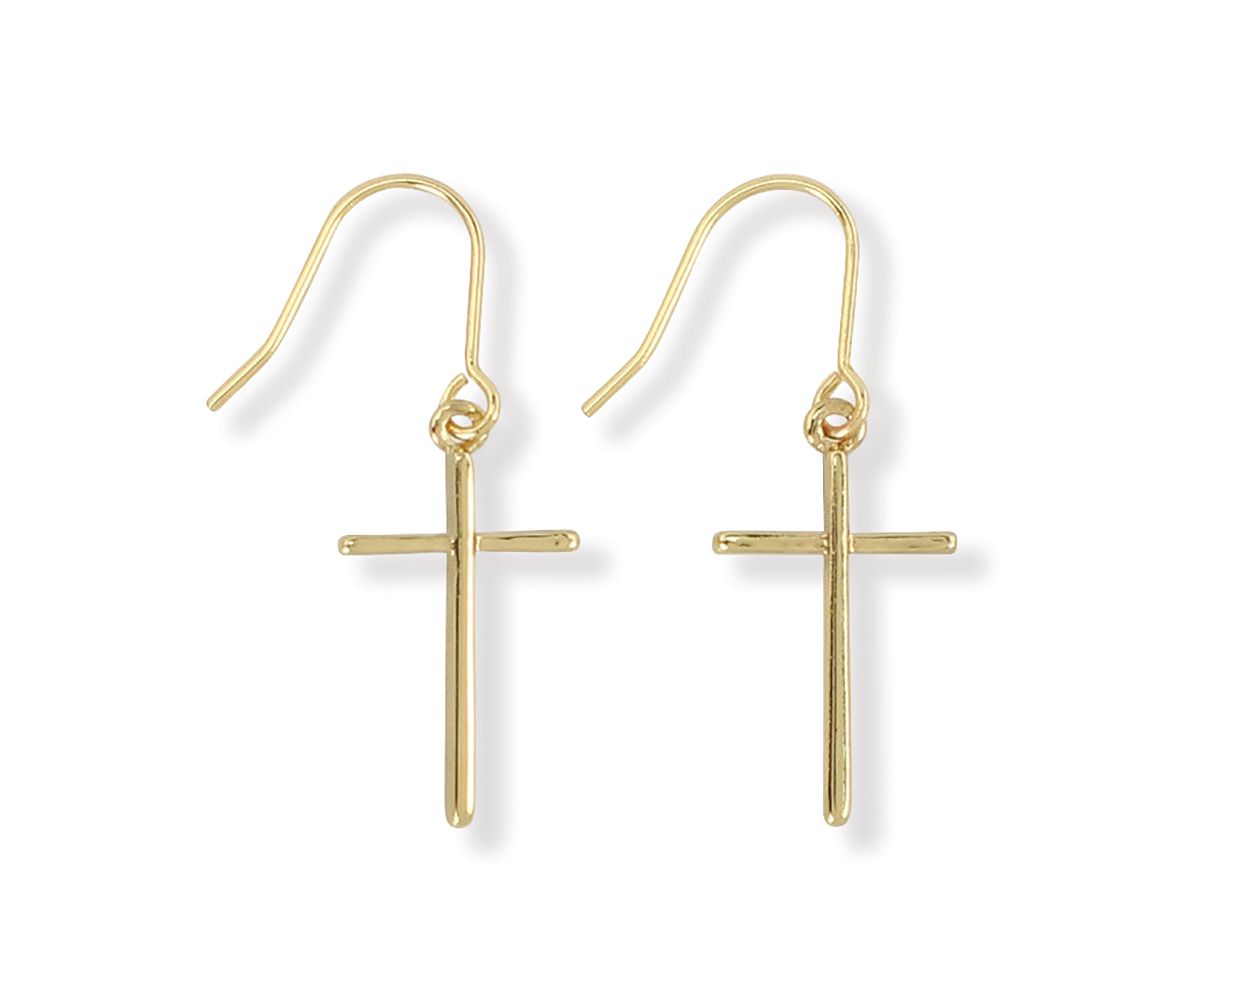 Periwinkle Classic Gold Cross Earrings